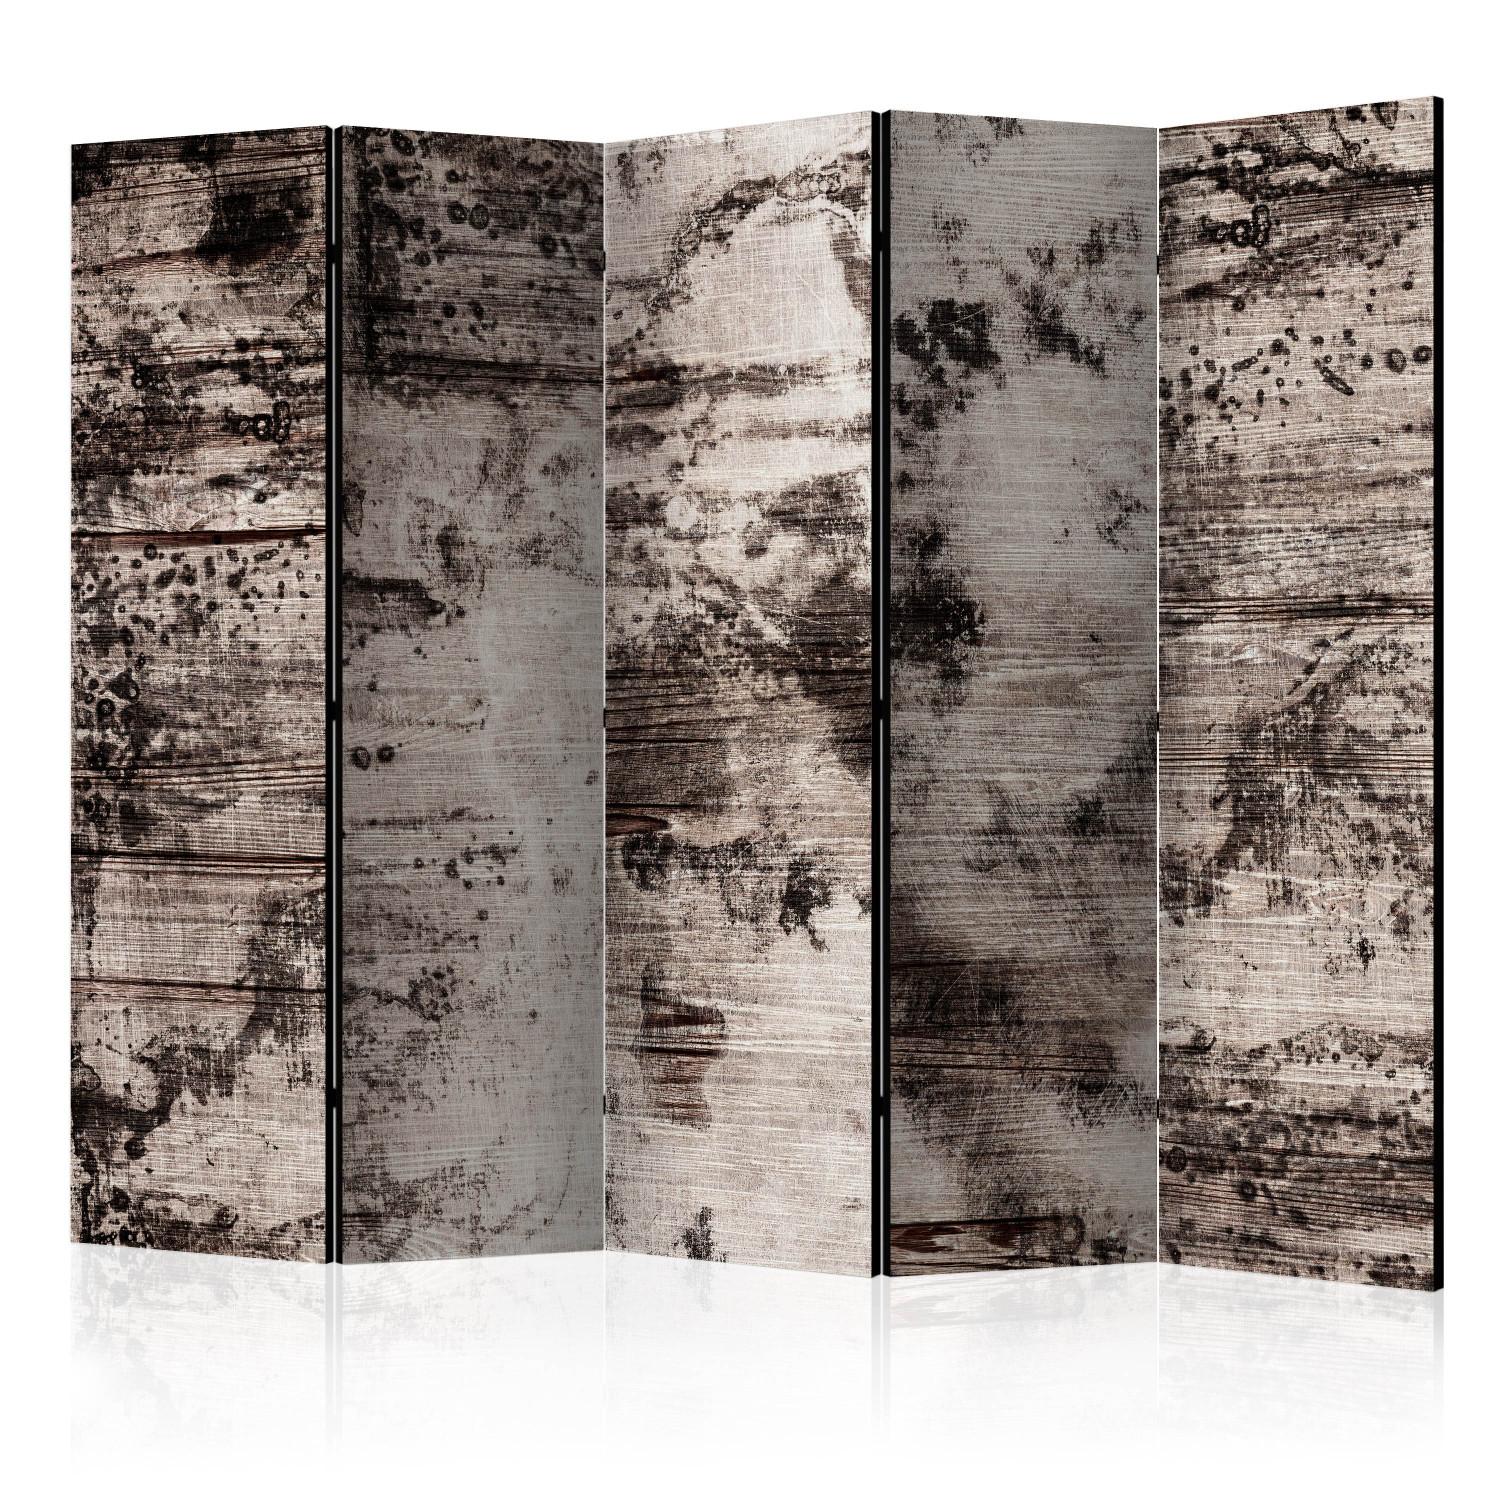 Biombo Burnt Wood II (5 partes) - composición gris en estilo retro